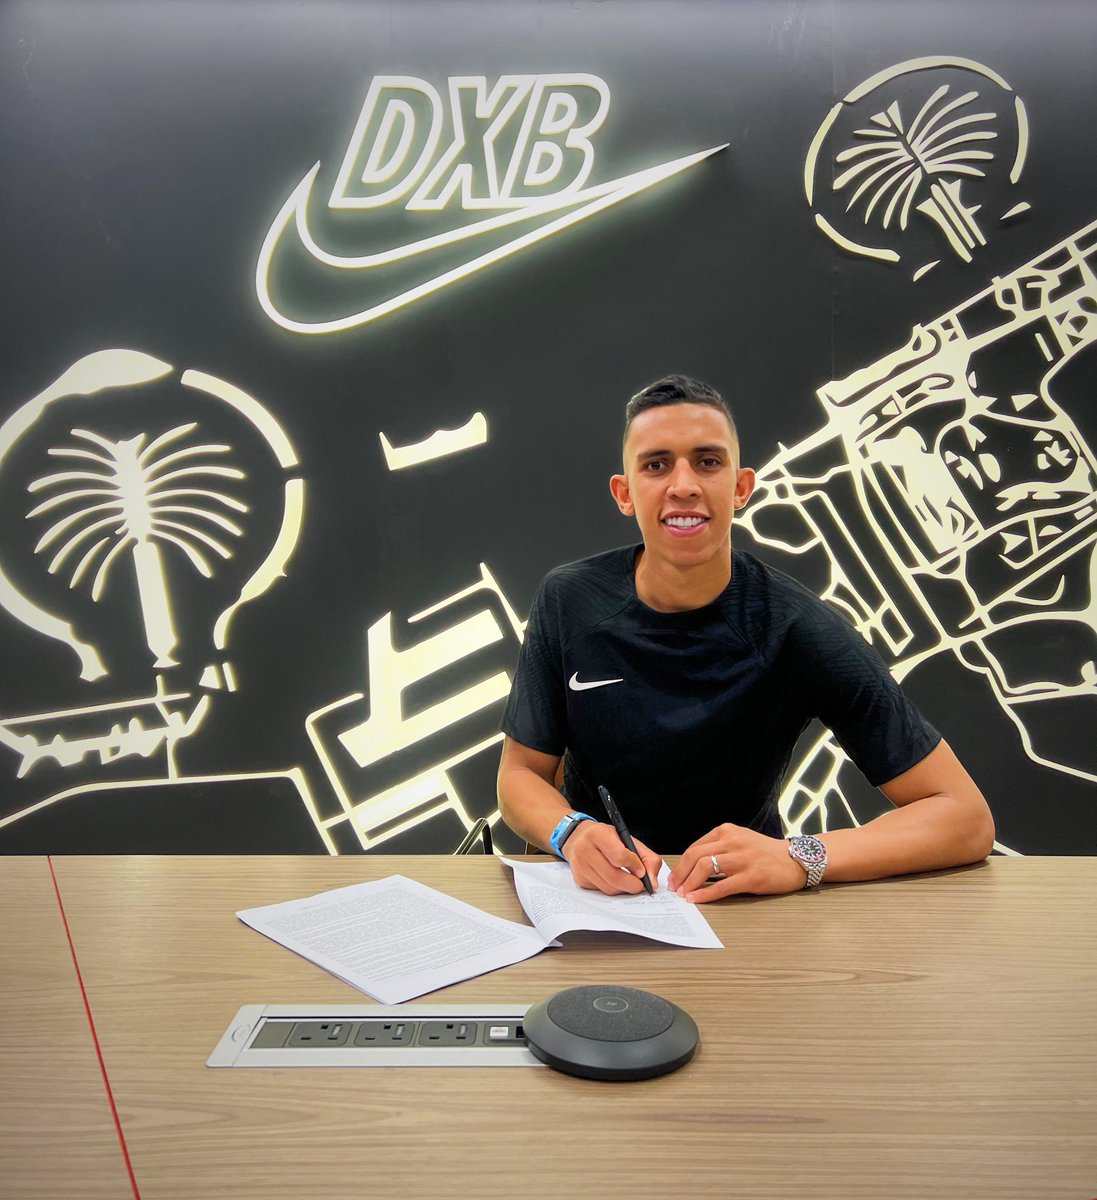 🚨

رسميا:
سفيان رحيمي يوقع عقد مع شركة نايك العالمية لتصبح العلامة التجارية للمستلزمات الرياضية للاعب